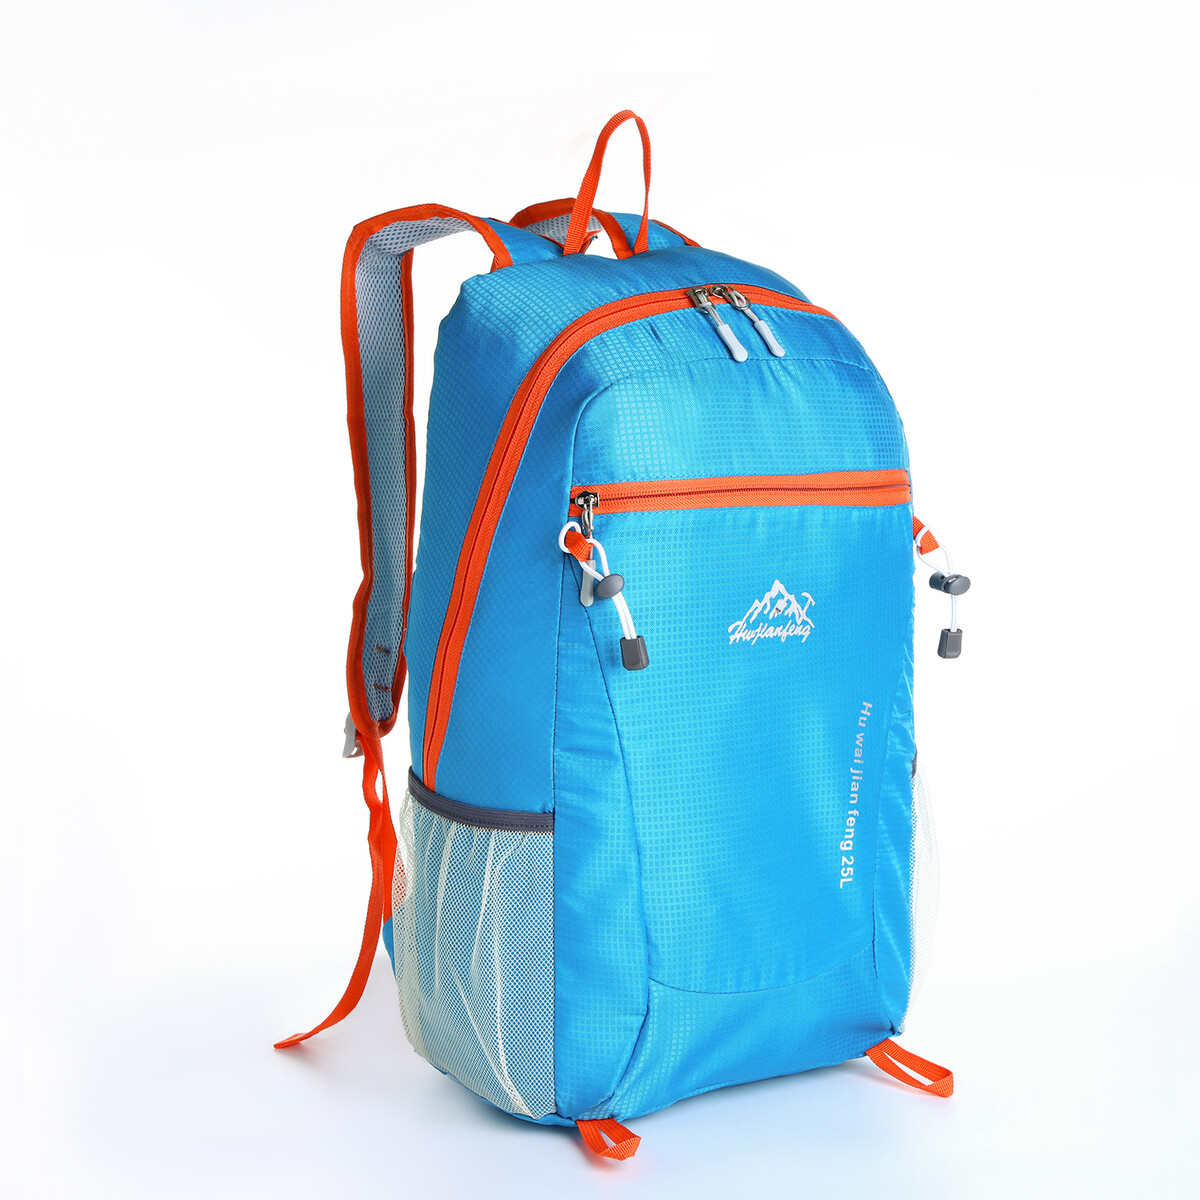 Рюкзак туристический 25л, складной, водонепроницаемый, на молнии, 4 кармана, цвет голубой рюкзак складной турист 25 л 28 16 45 отд на молнии 2 н к 2 б к водонепрониц оранжевый 10189